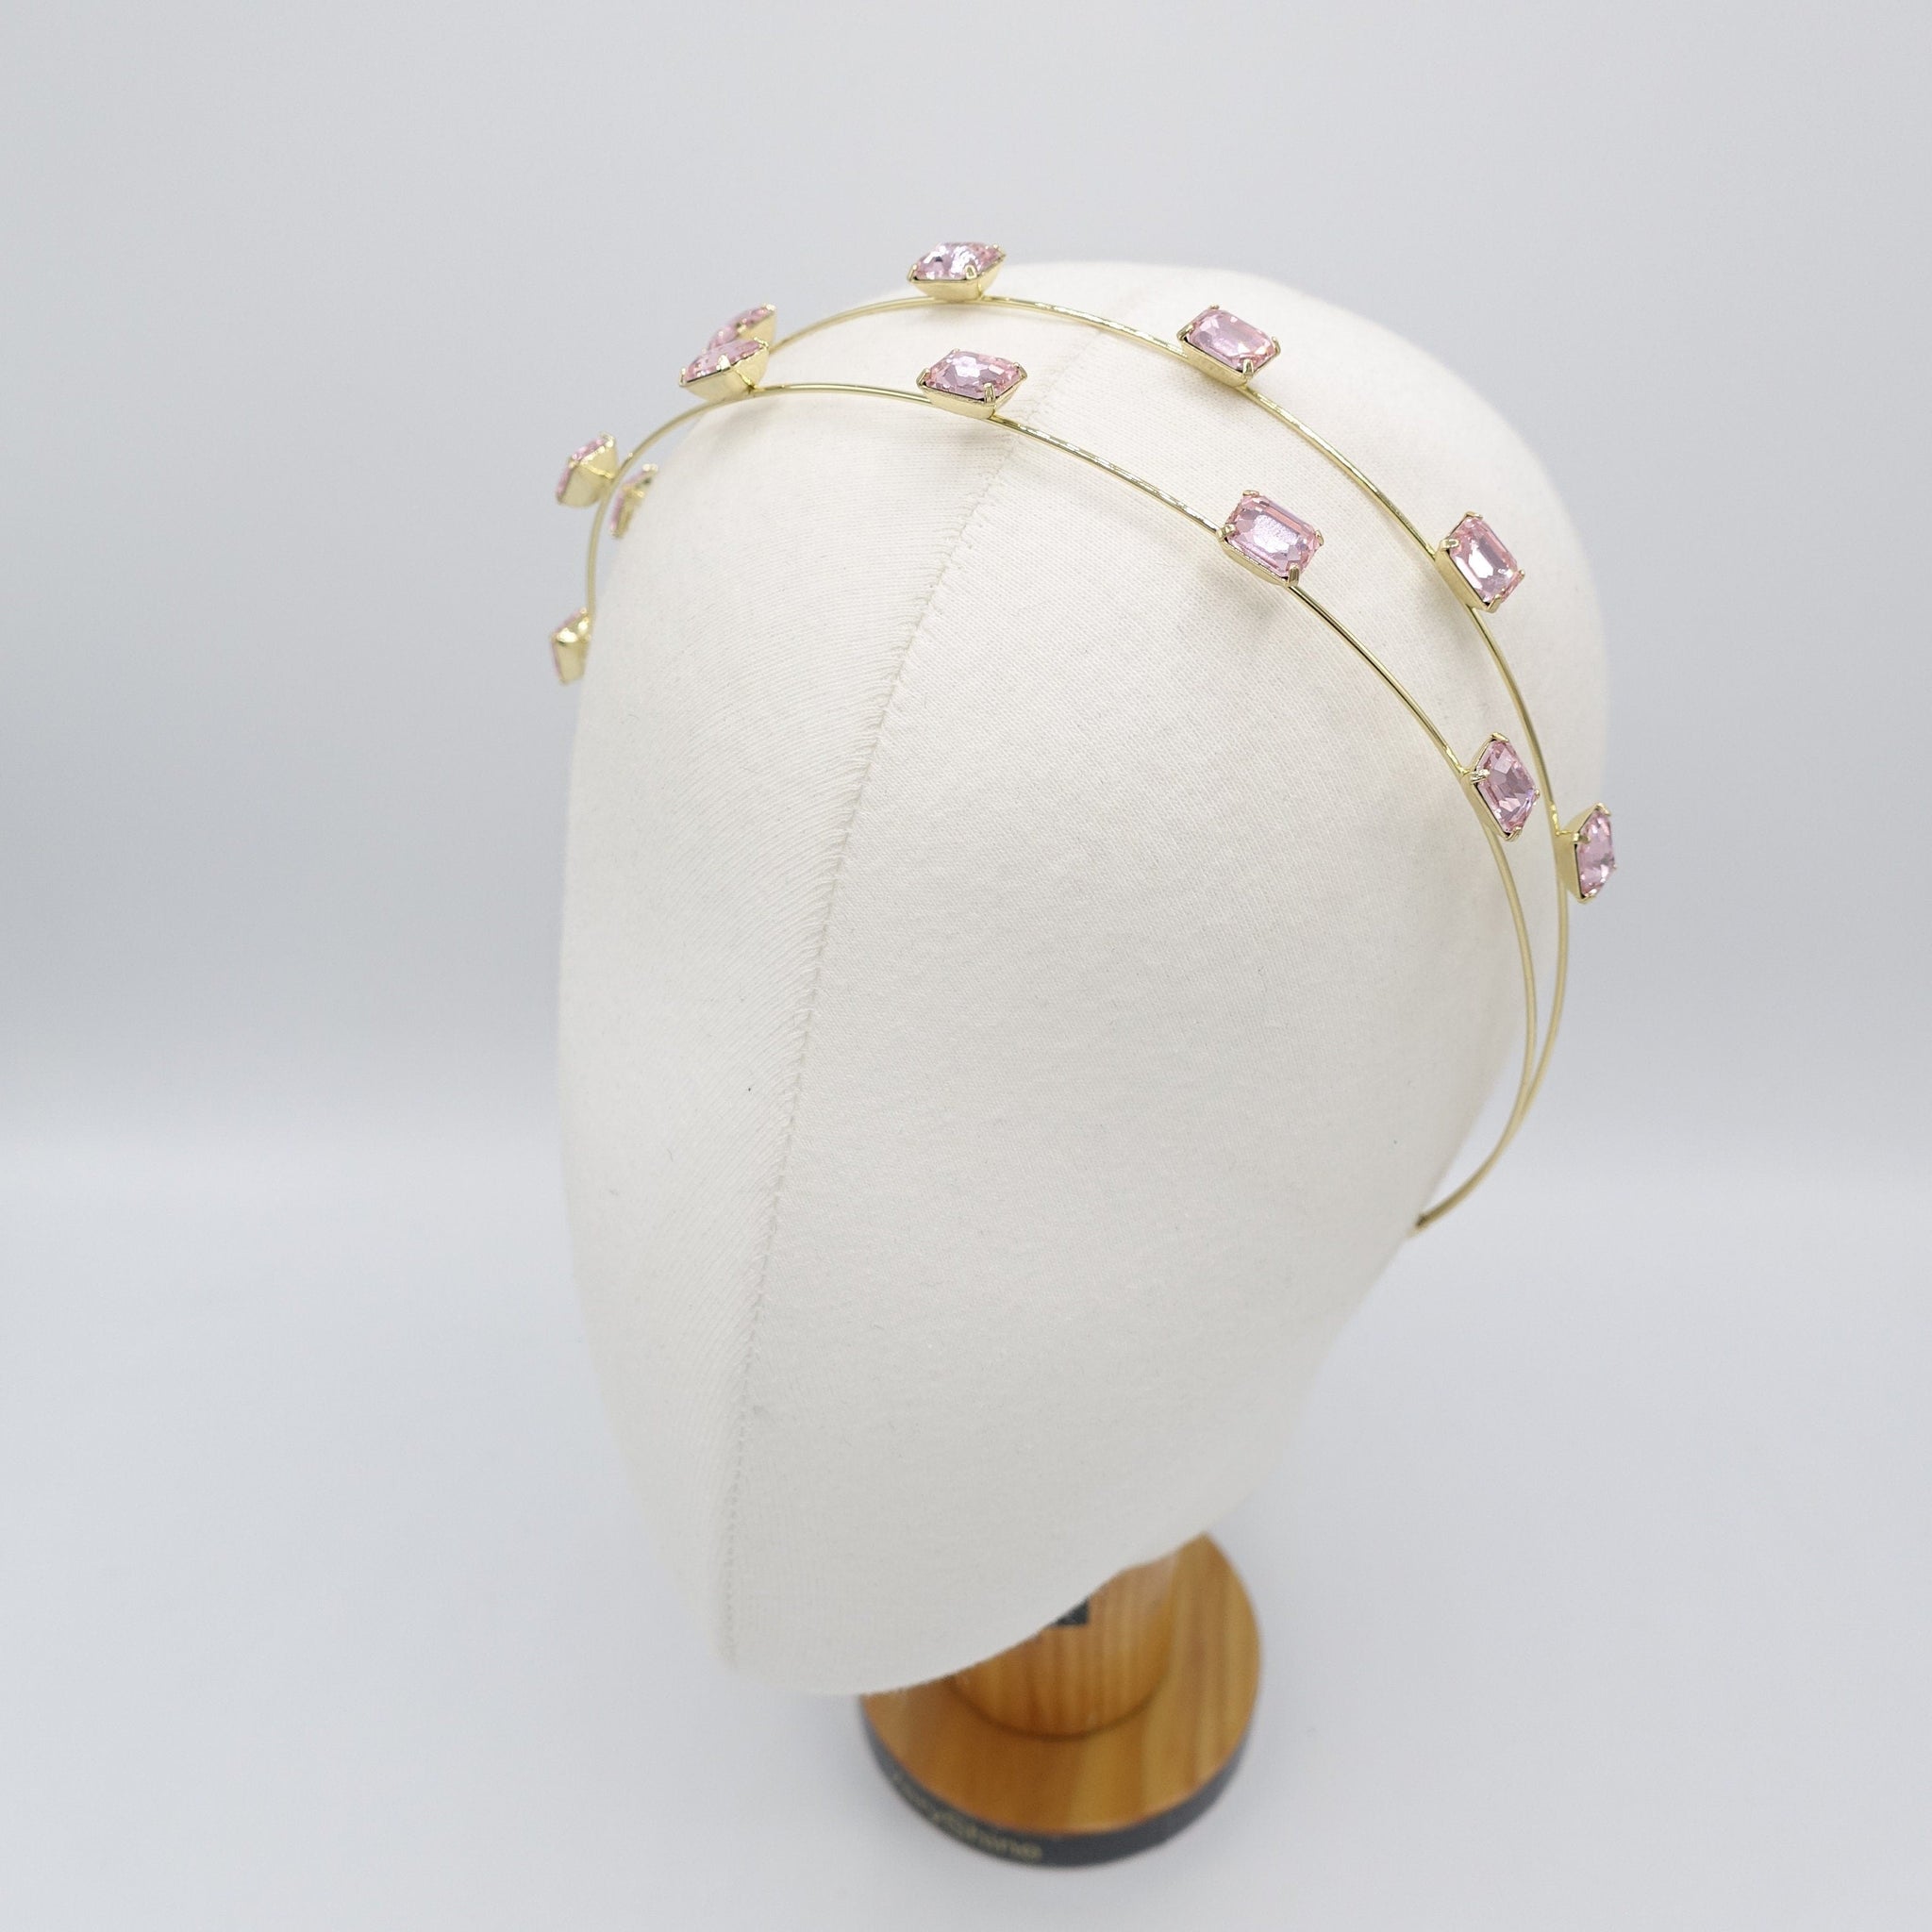 veryshine.com Headband rhinestone headband, double headband, bling headband for women